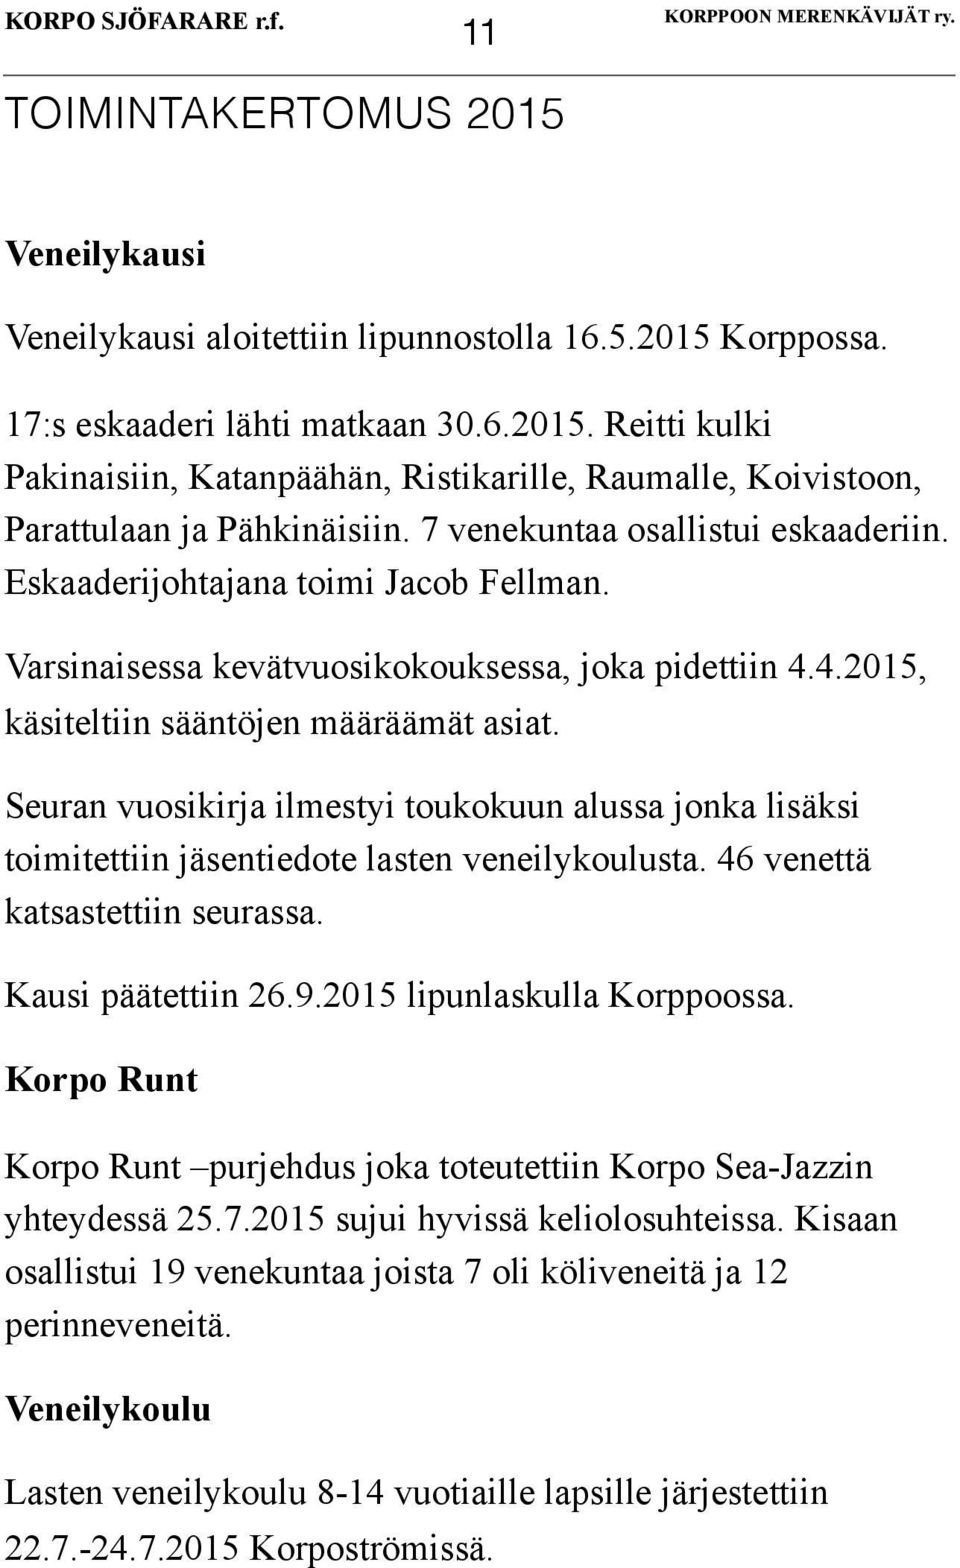 Seuran vuosikirja ilmestyi toukokuun alussa jonka lisäksi toimitettiin jäsentiedote lasten veneilykoulusta. 46 venettä katsastettiin seurassa. Kausi päätettiin 26.9.2015 lipunlaskulla Korppoossa.